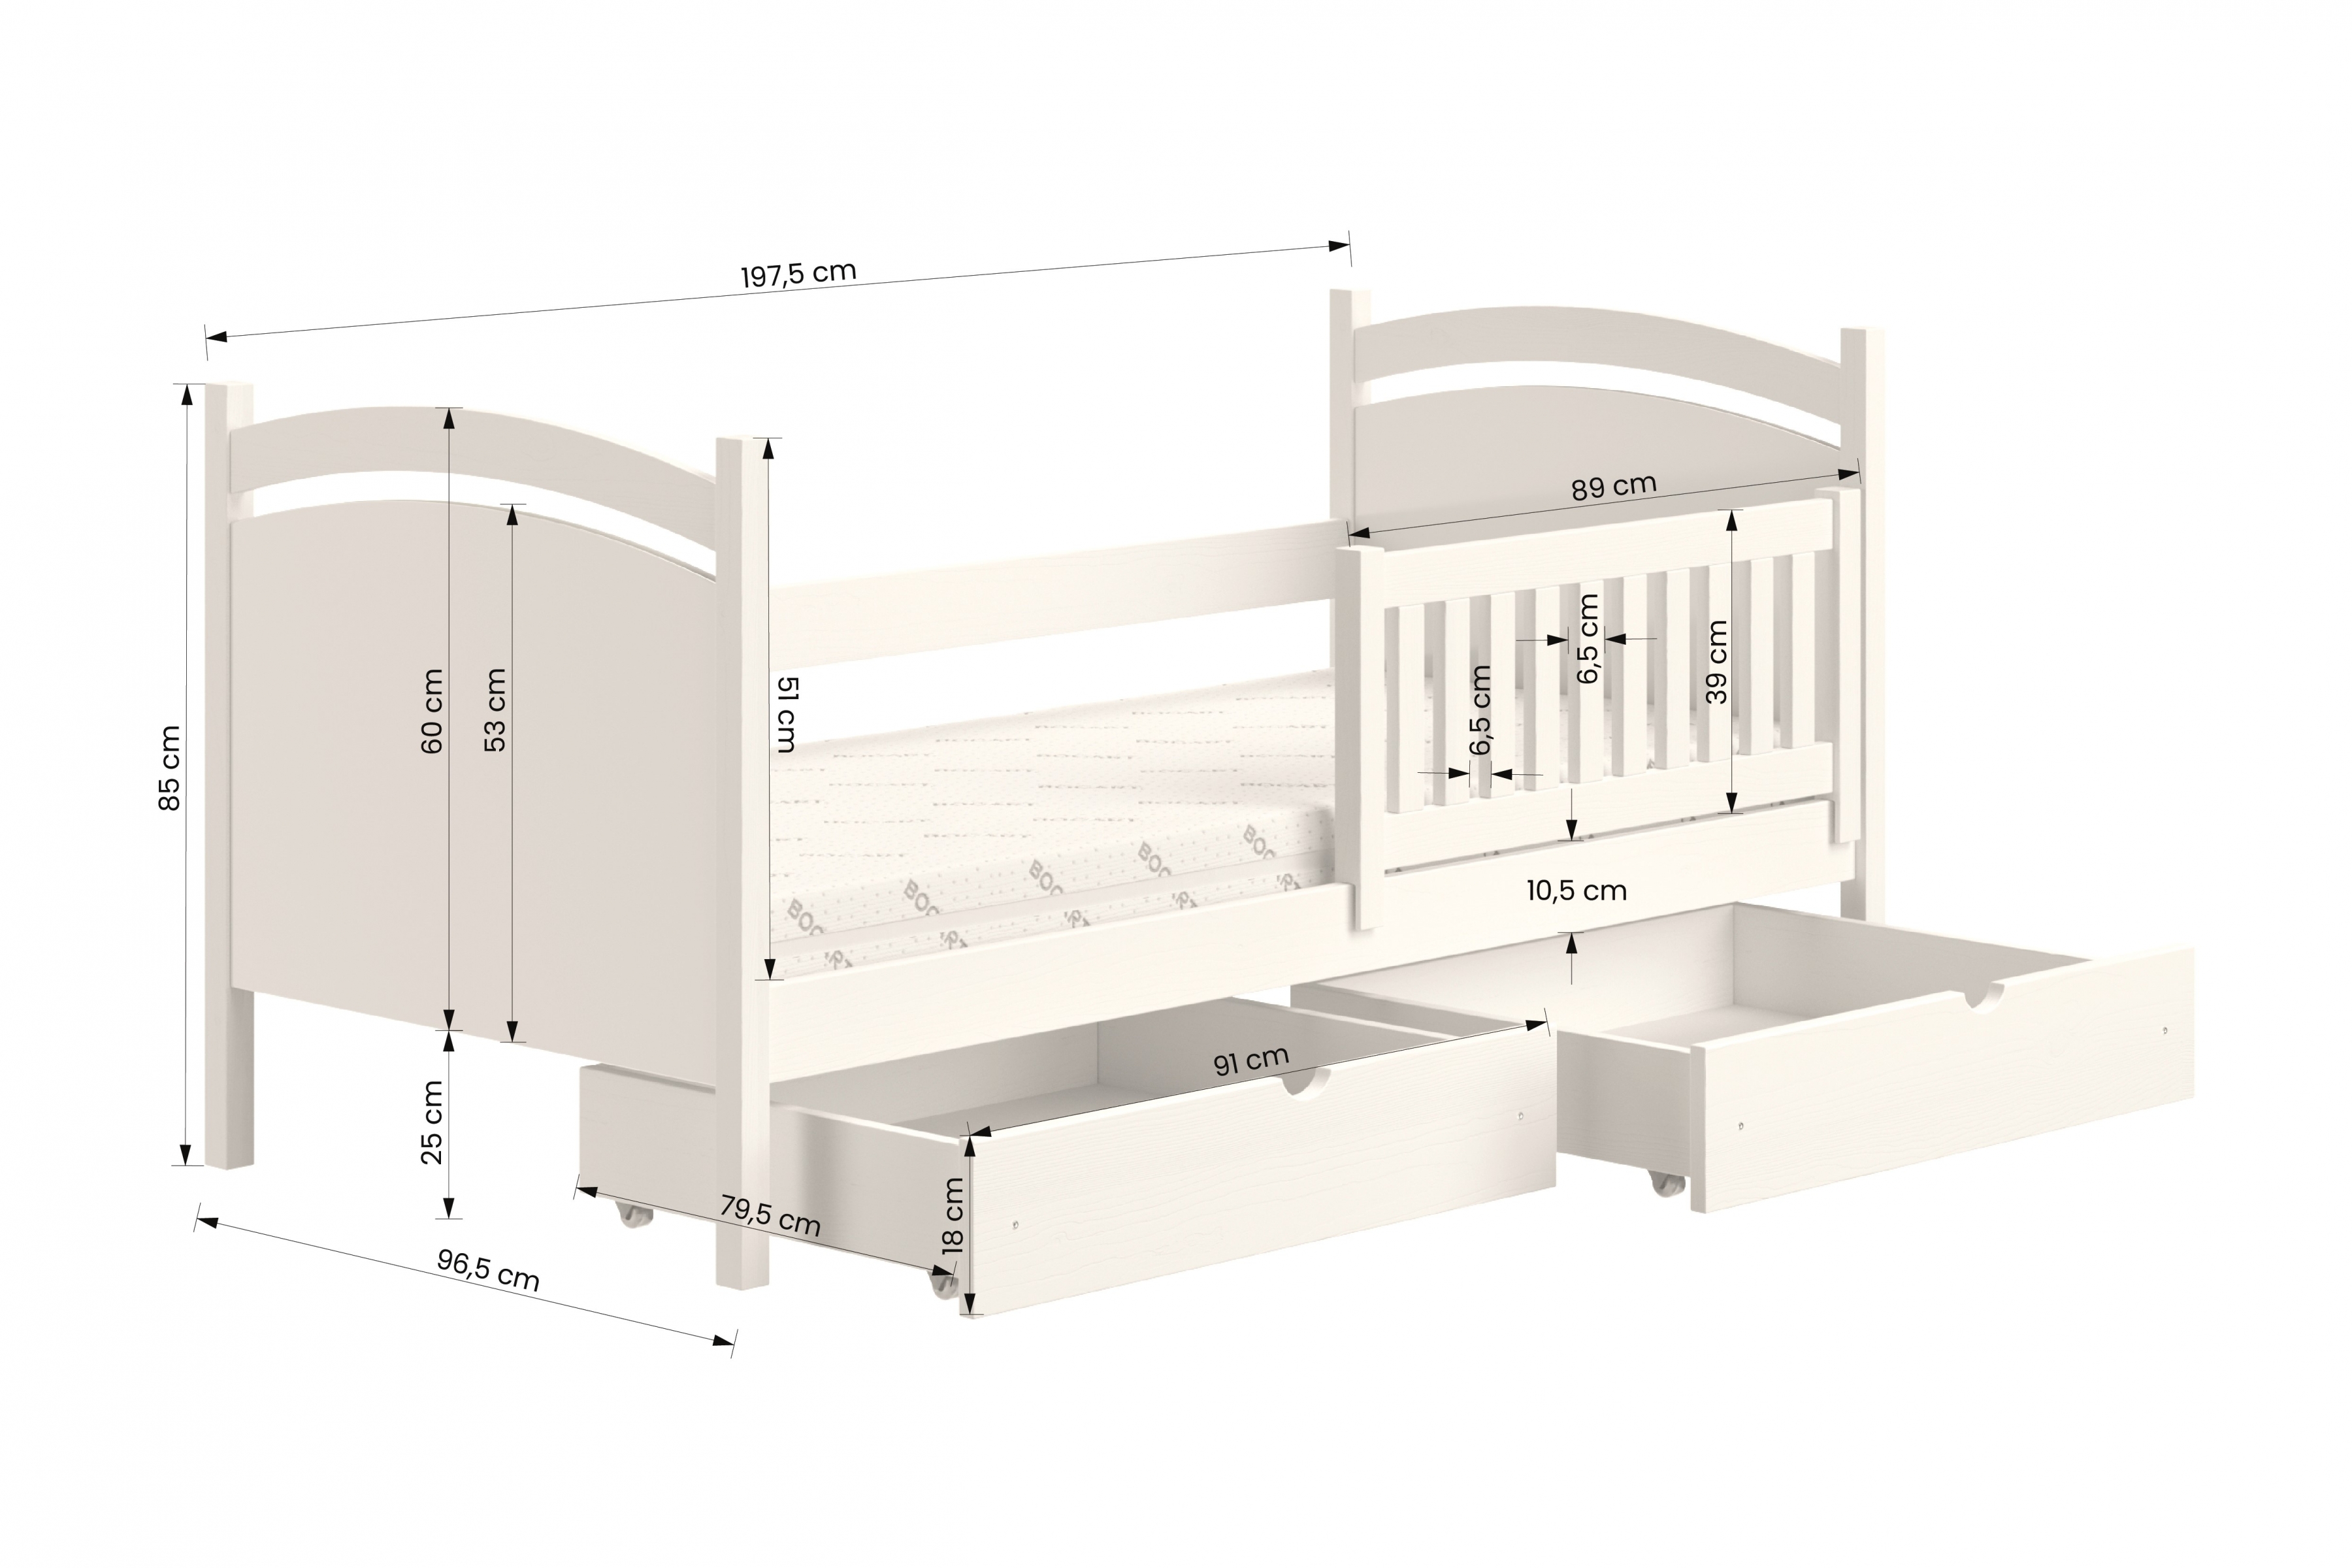 postel dětské s tabulí na suché mazání Amely - Barva Bílý, rozměr 90x190  postel dzieciece z tablica suchoscieralna Amely - Rozměry